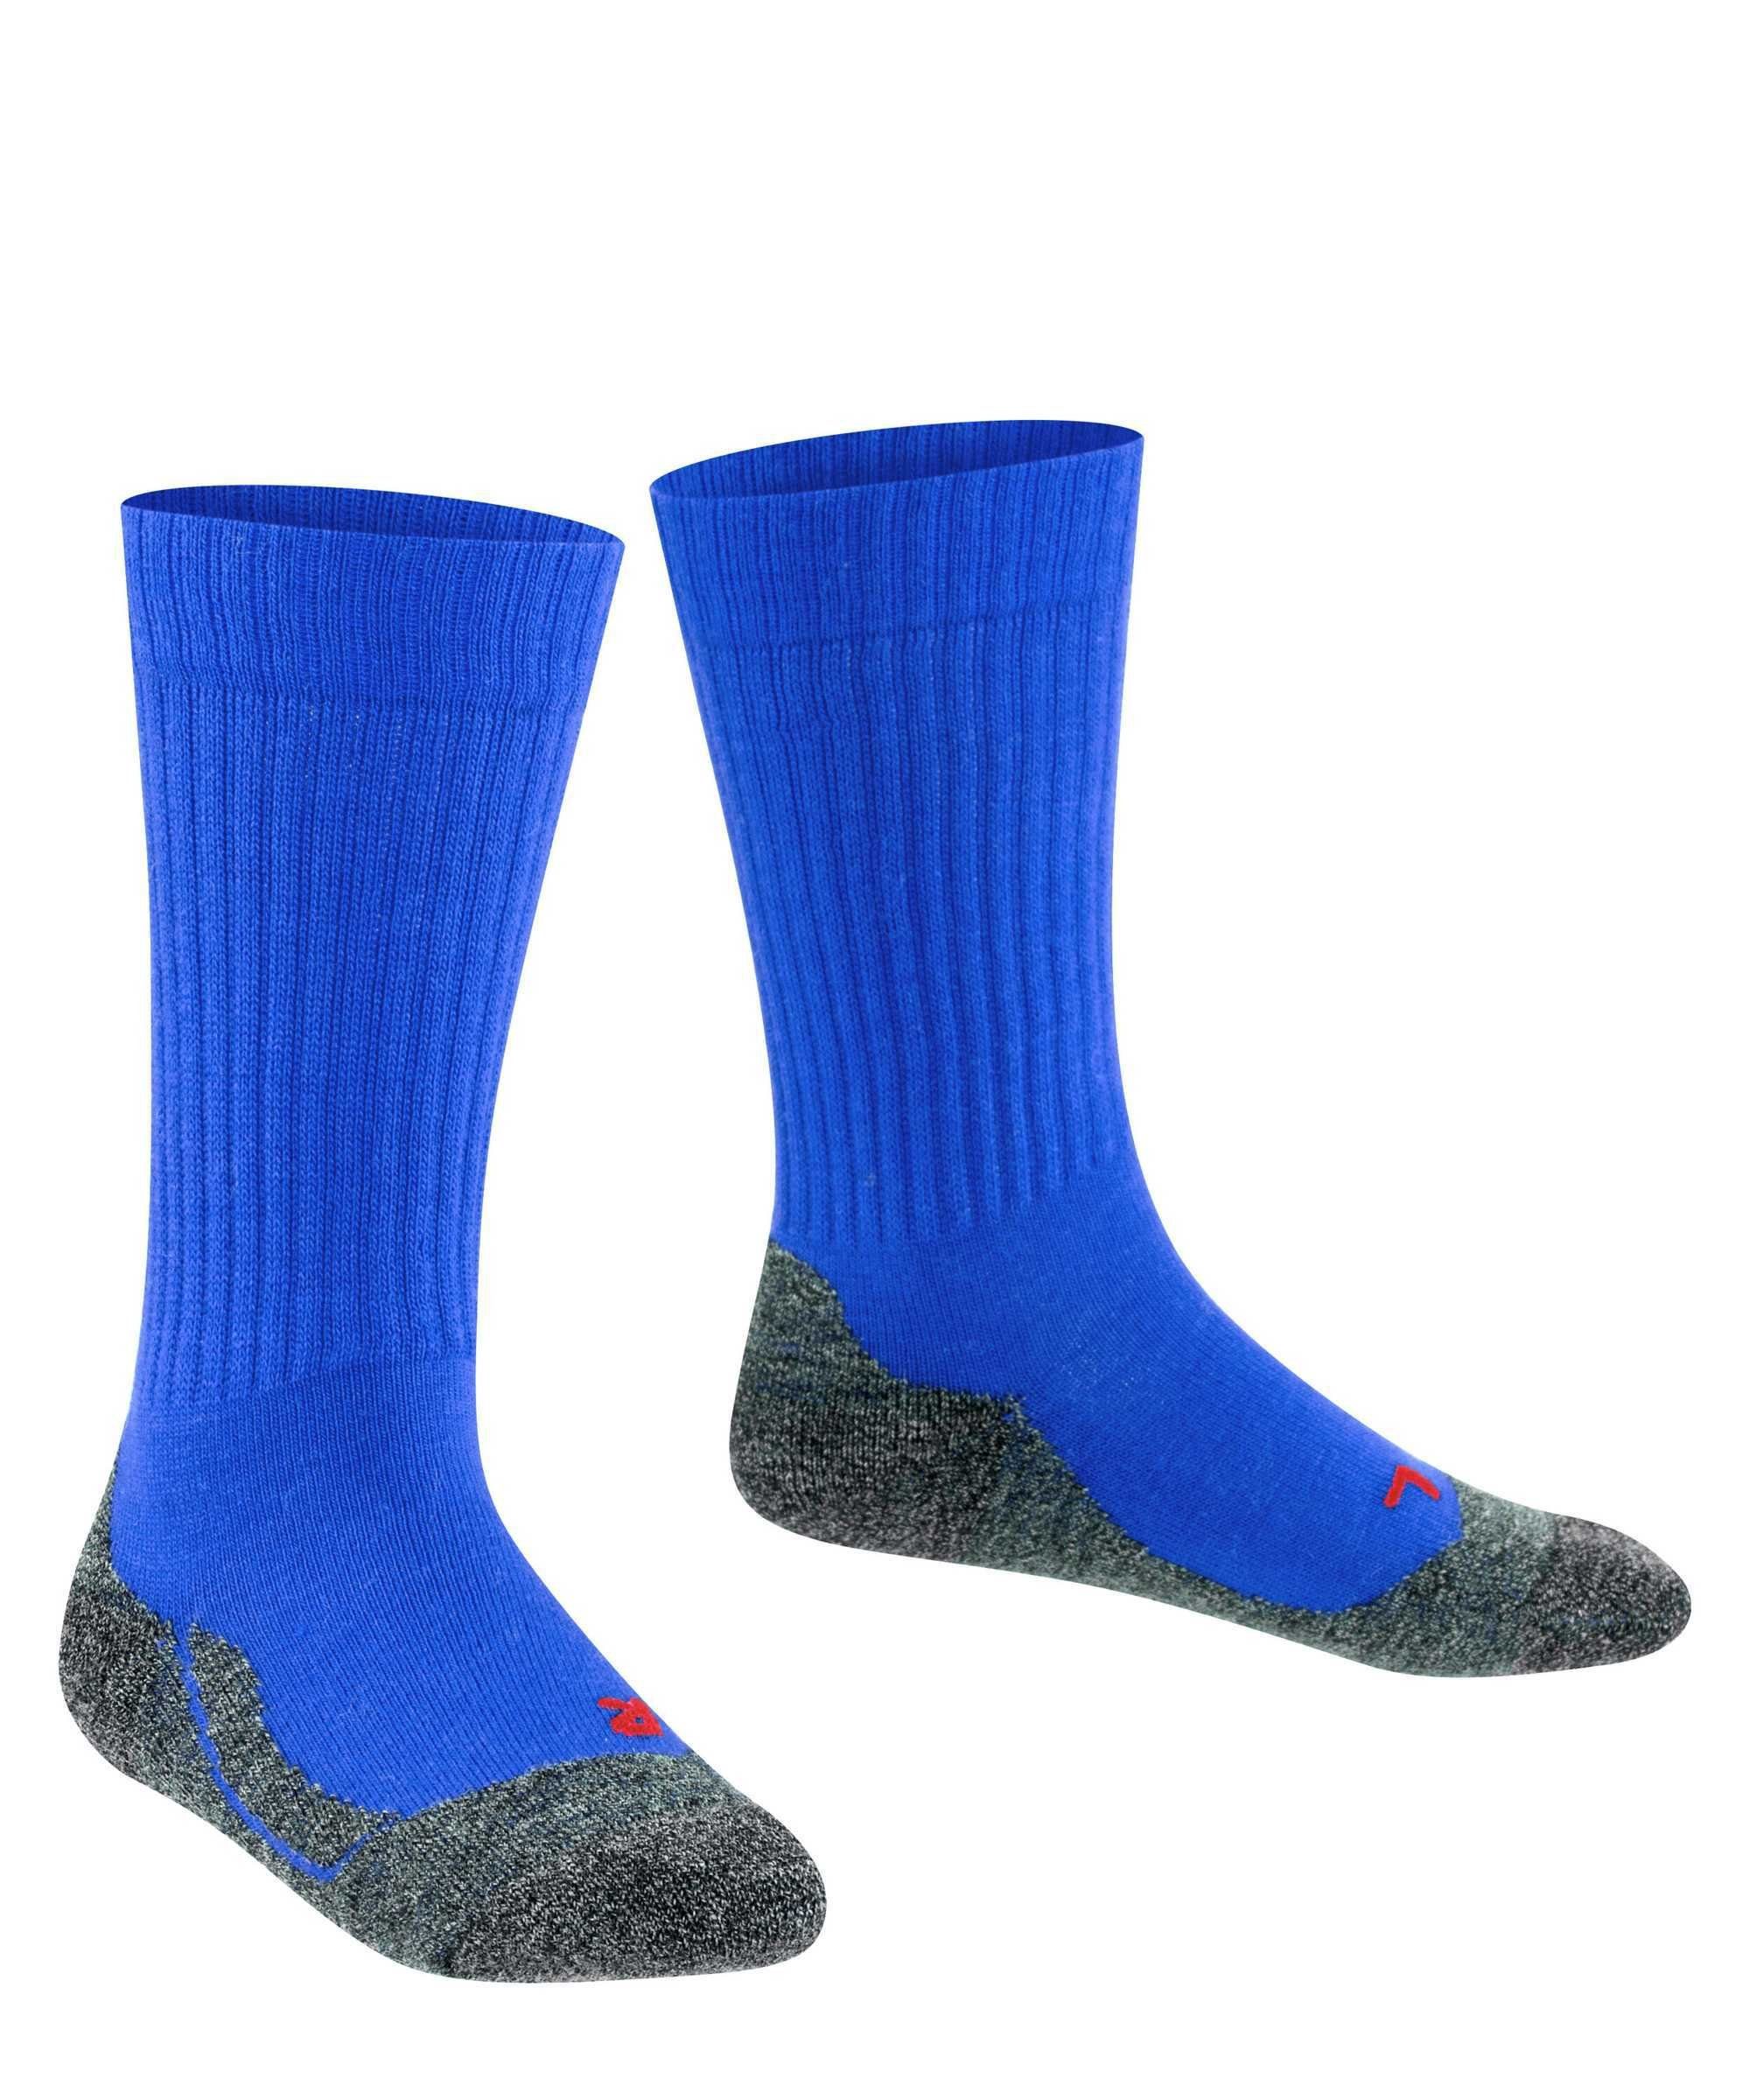 FALKE Freizeitsocken Warm, Active Blau - Socken Kinder Kurzsocken